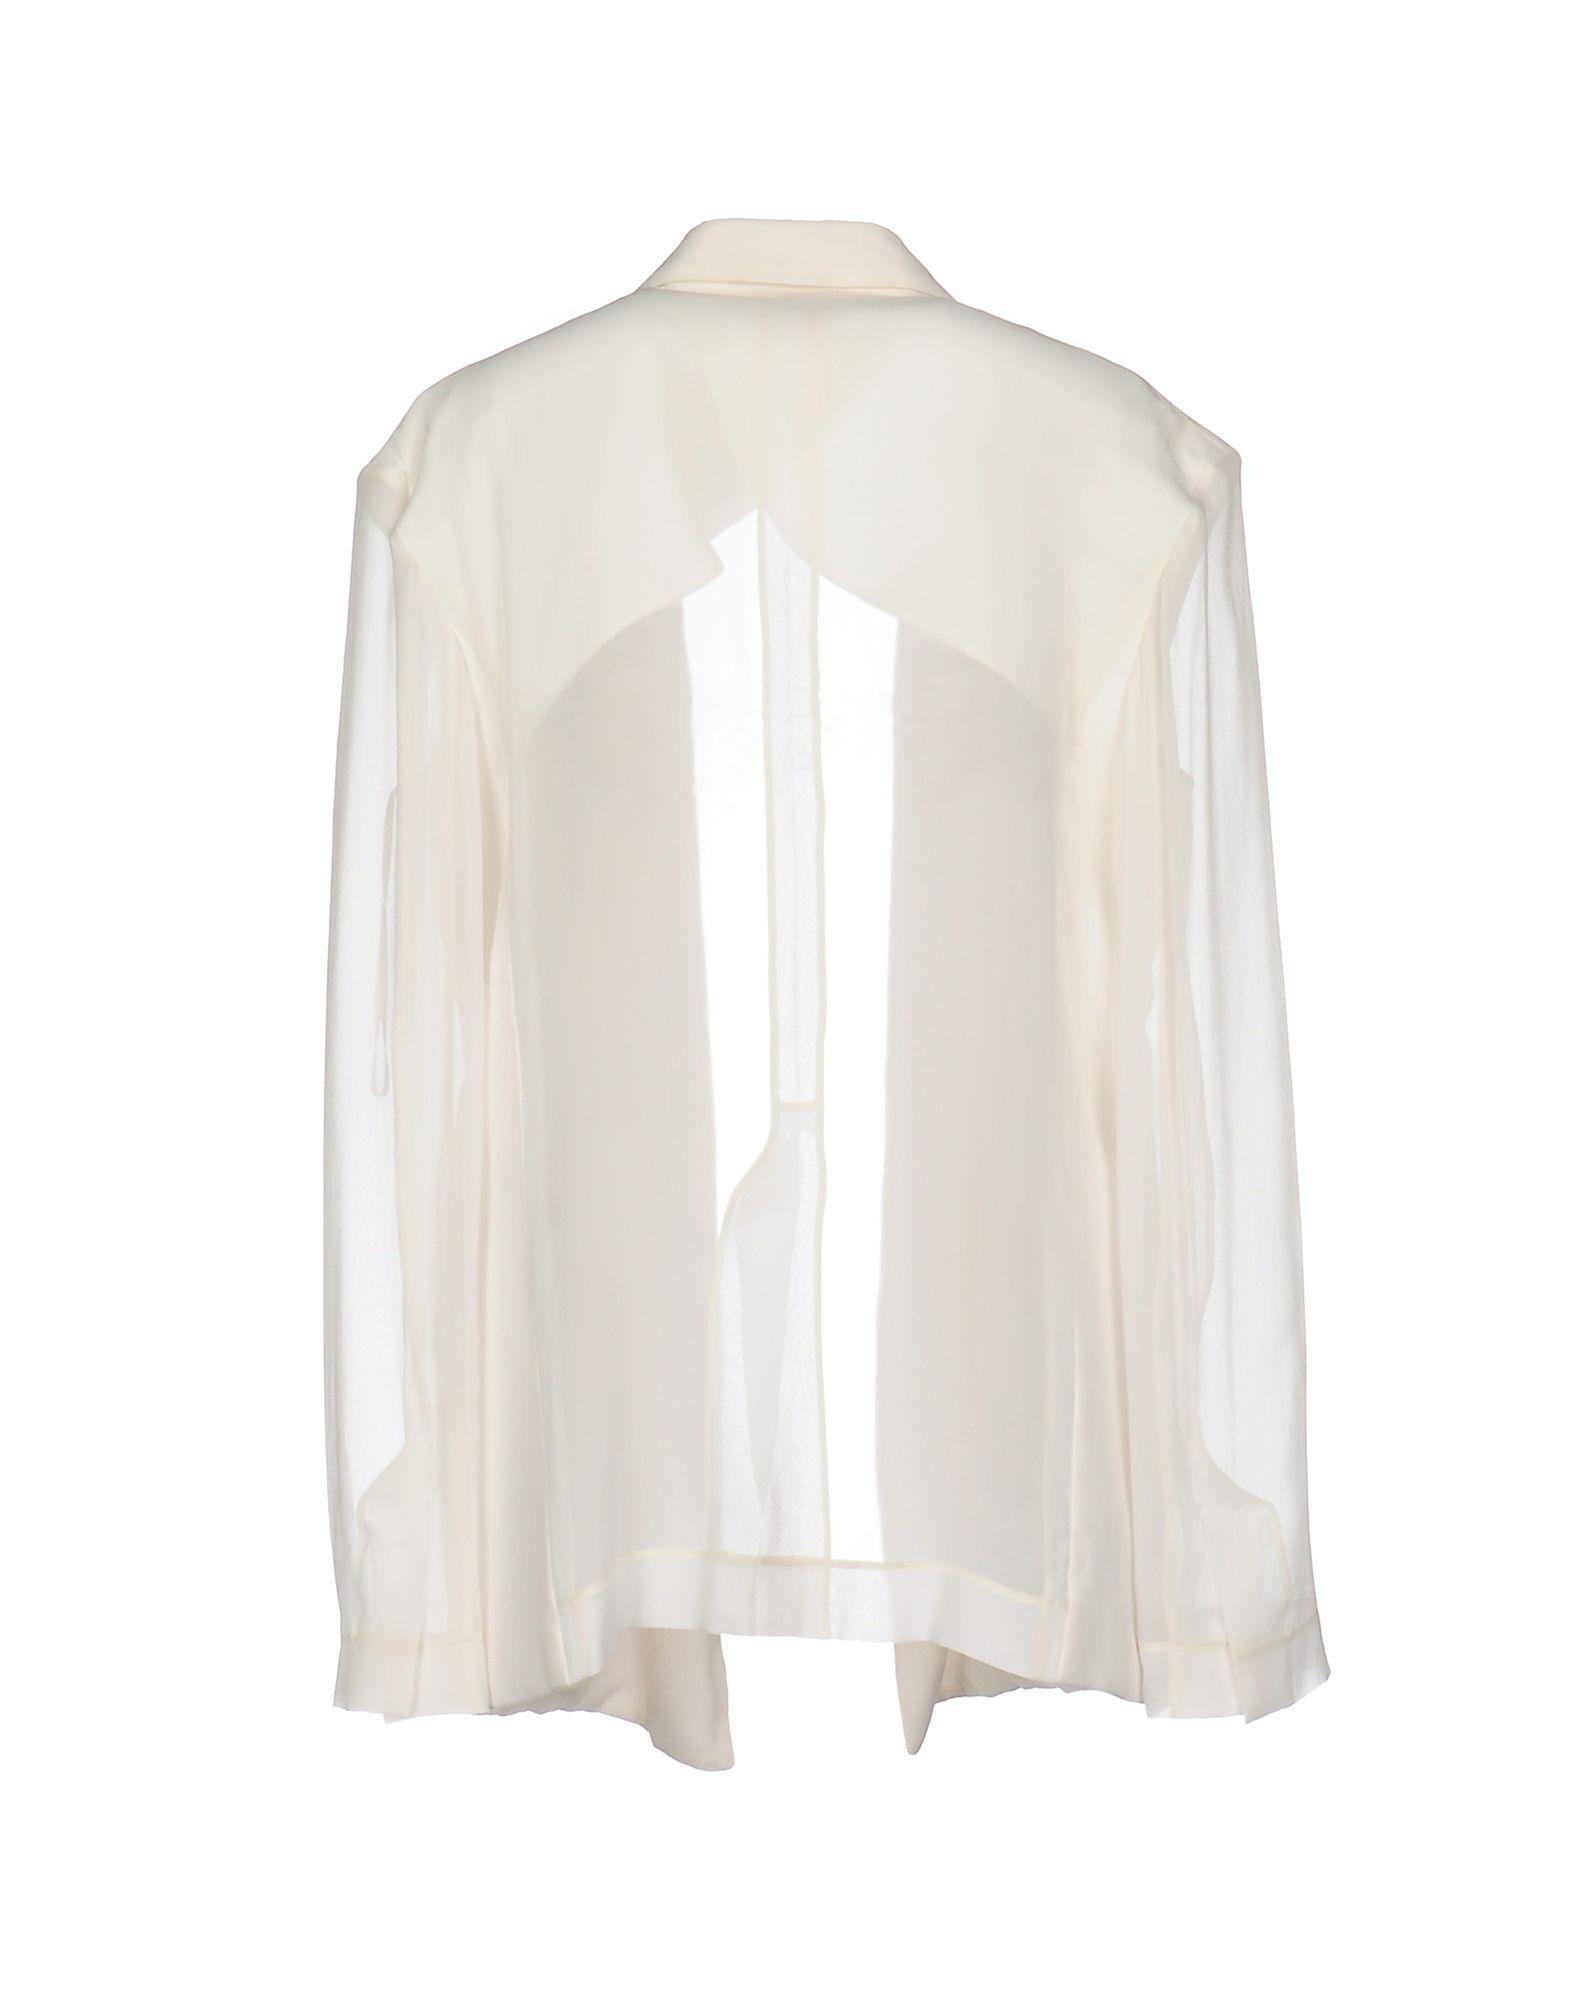 Celine Chiffon Suit Jacket in White - Lyst